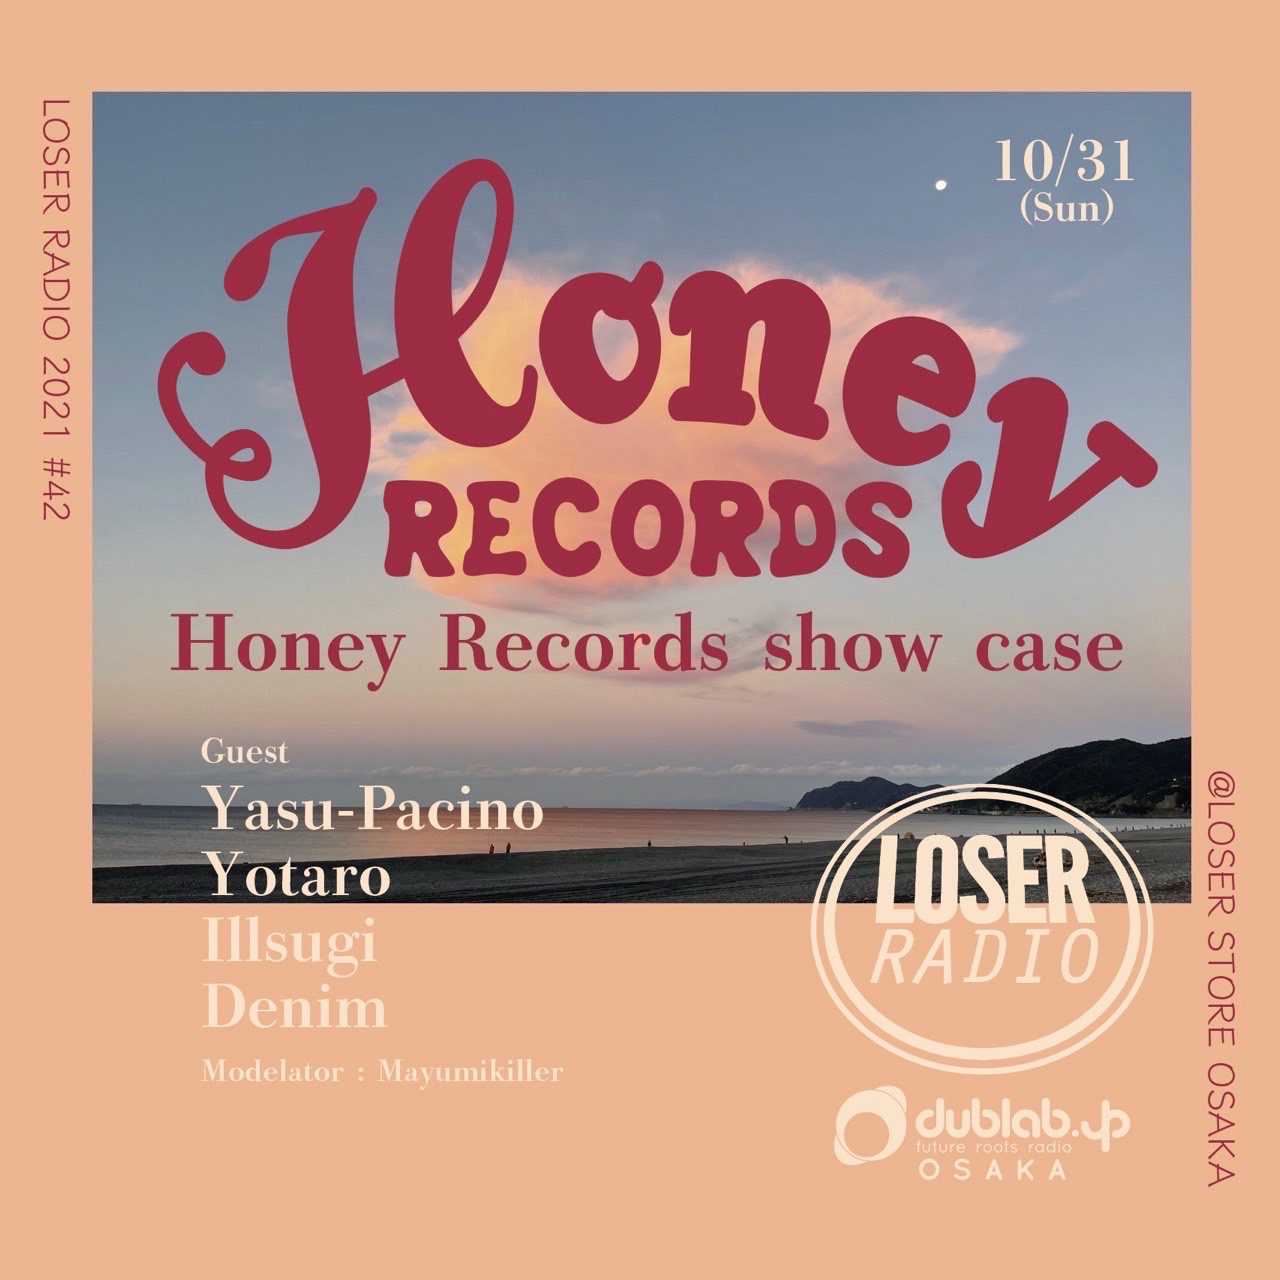 10月31日にLoser radioでHoney Records show caseが放送されます